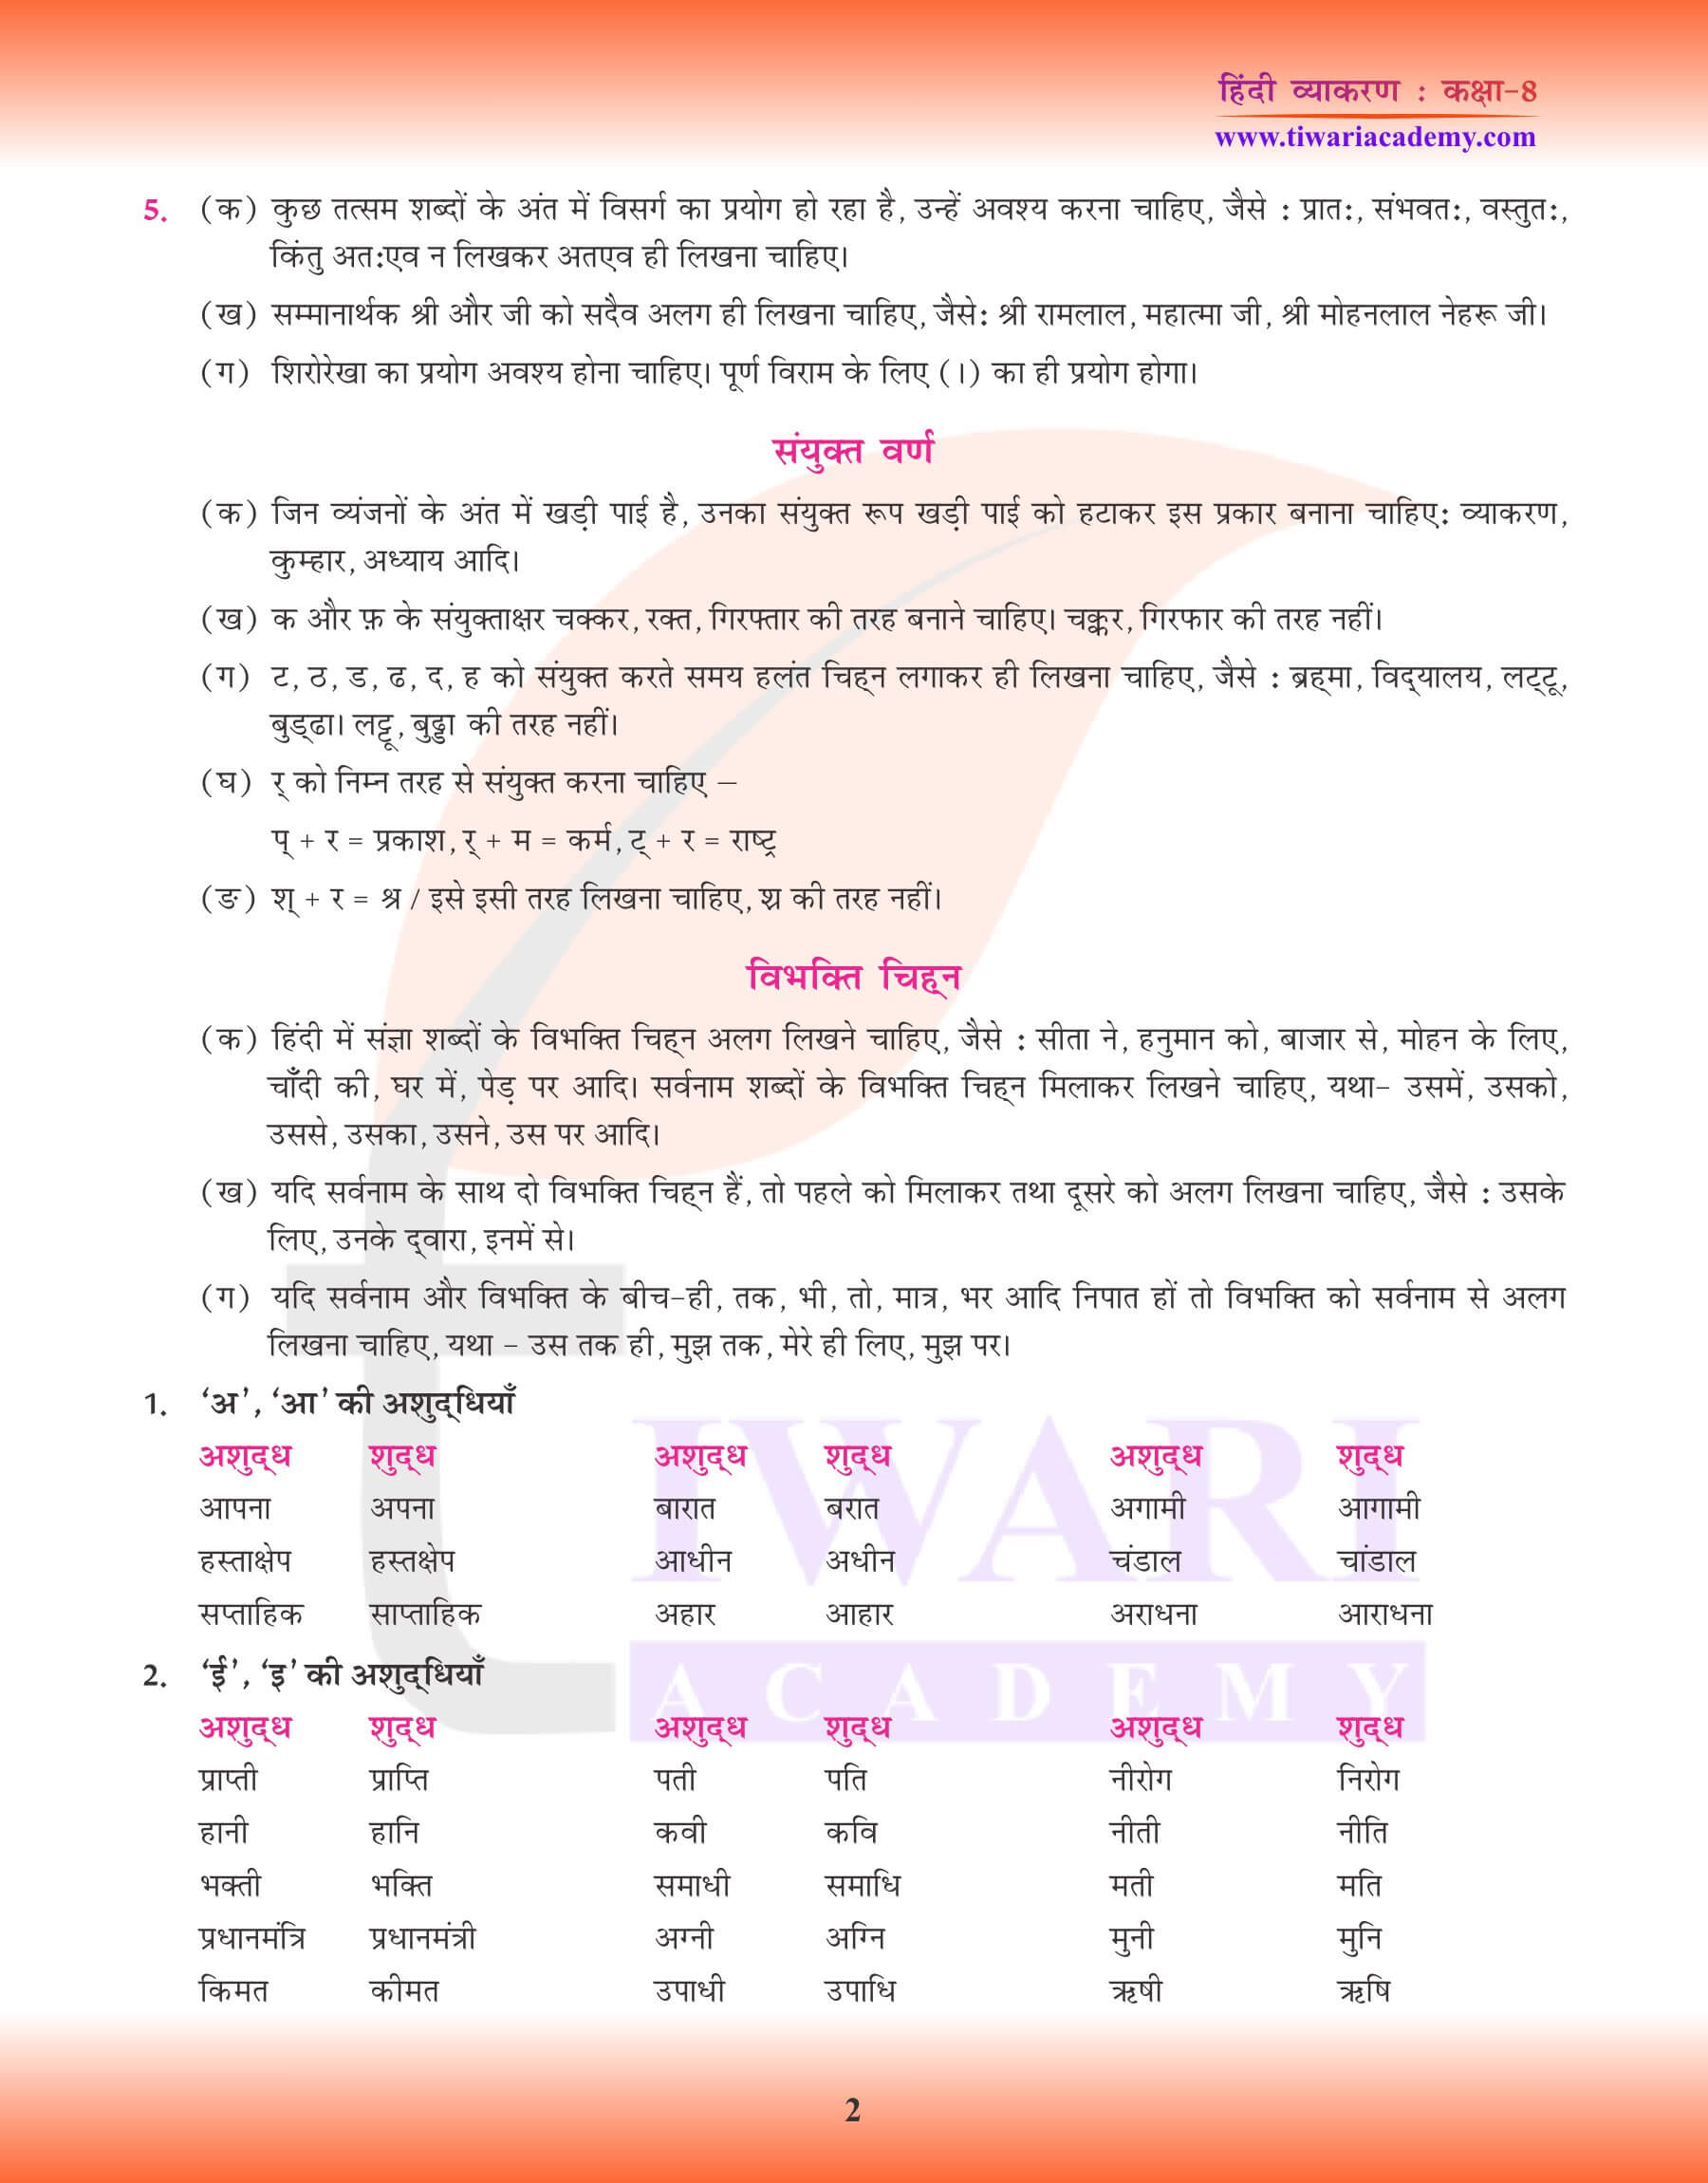 कक्षा 8 हिंदी व्याकरण में वर्तनी विचार